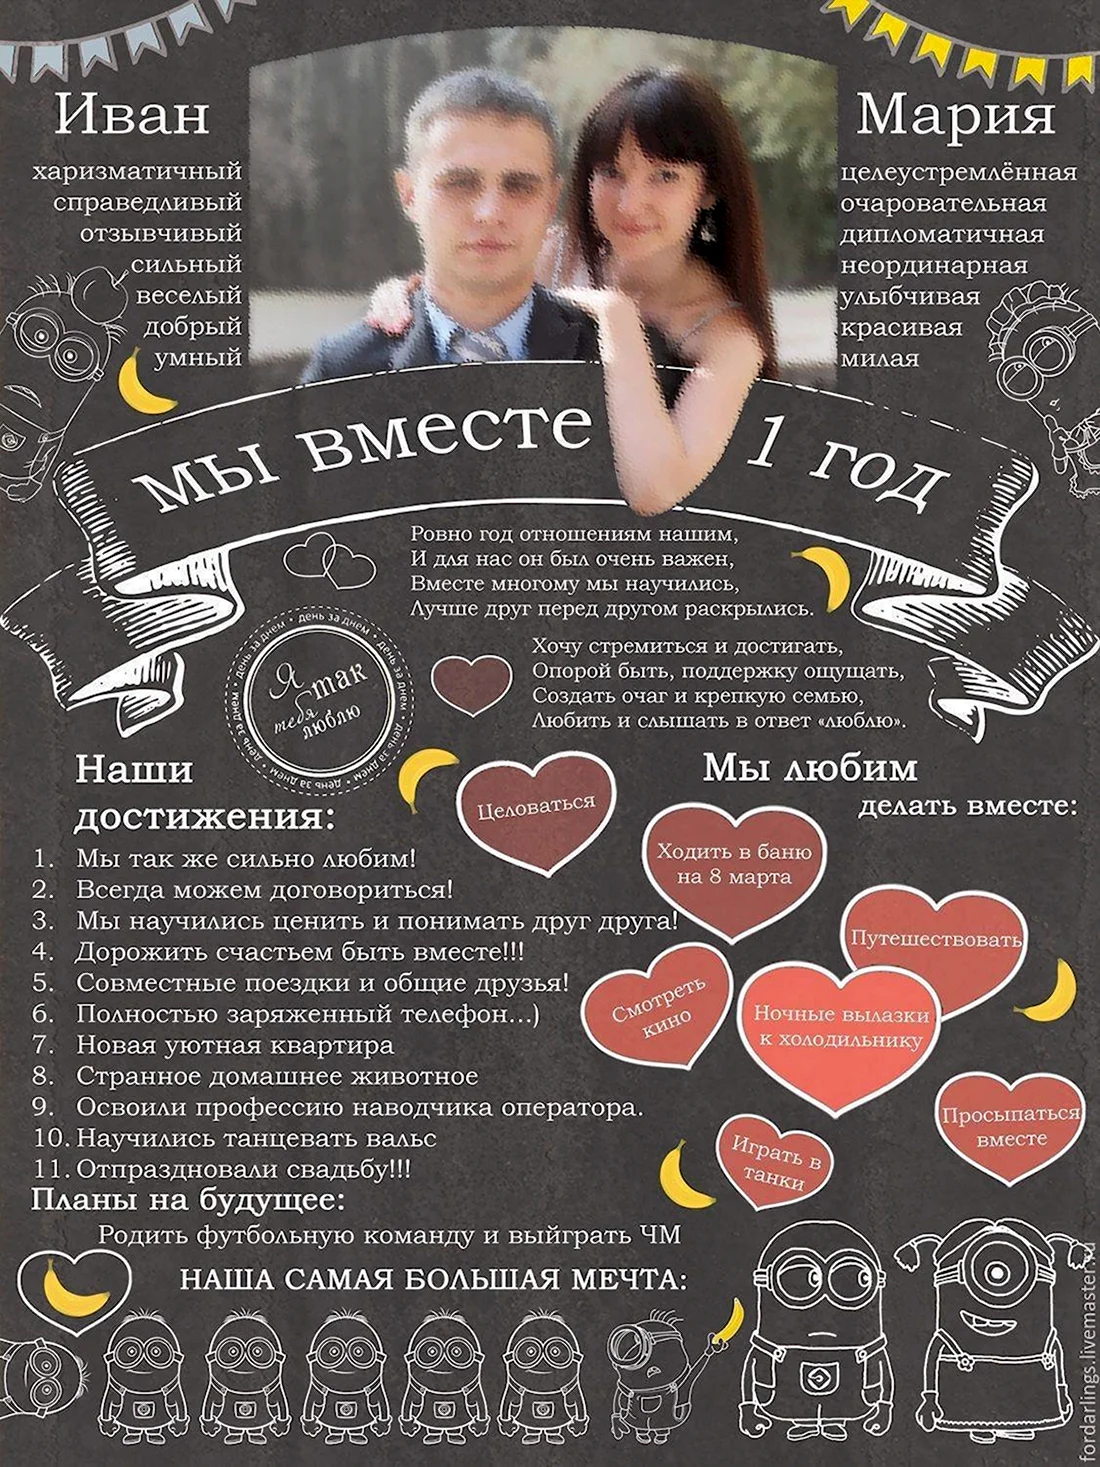 Плакат на юбилей свадьбы. Открытка для мужчины